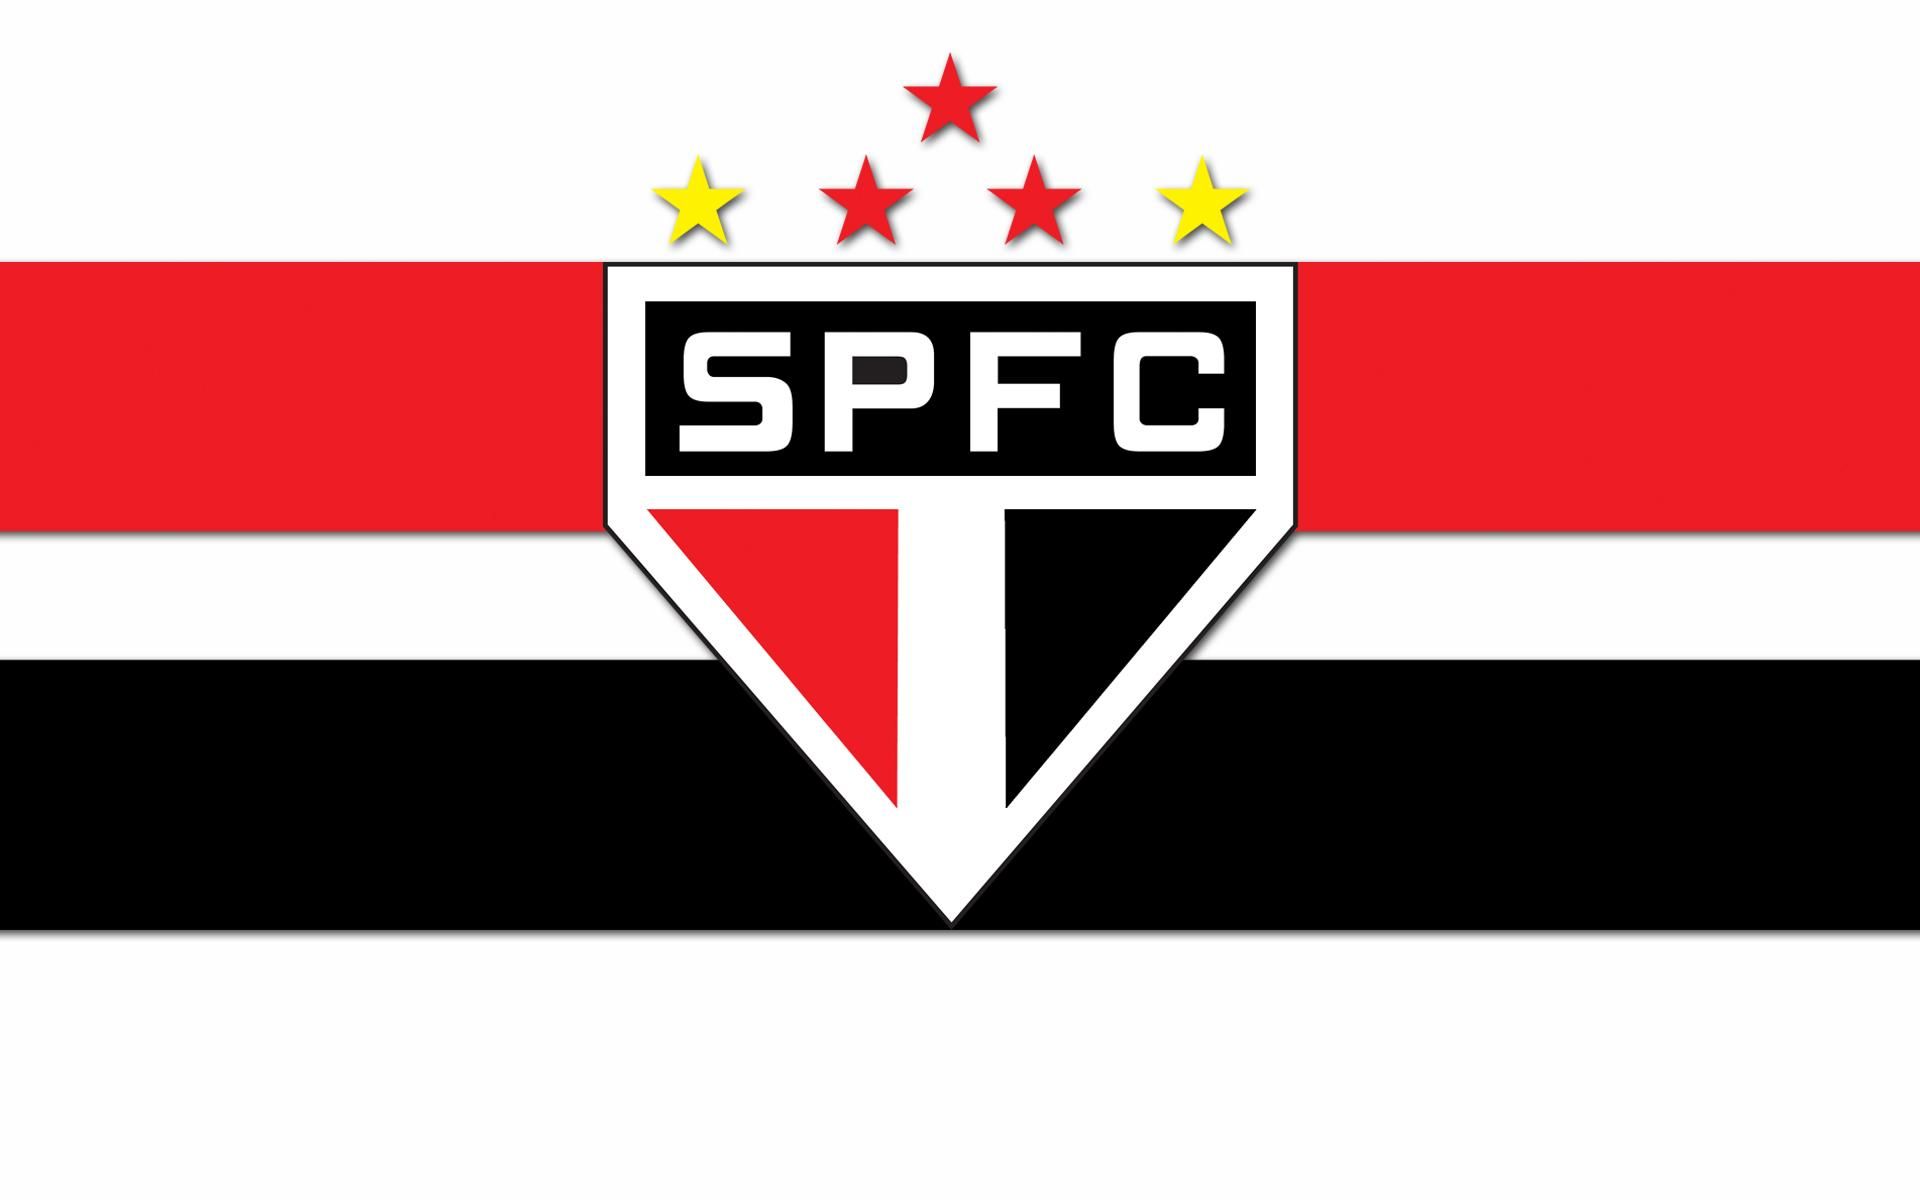 Escudo do São Paulo ficou em 1º lugar na lista do Daily Mail